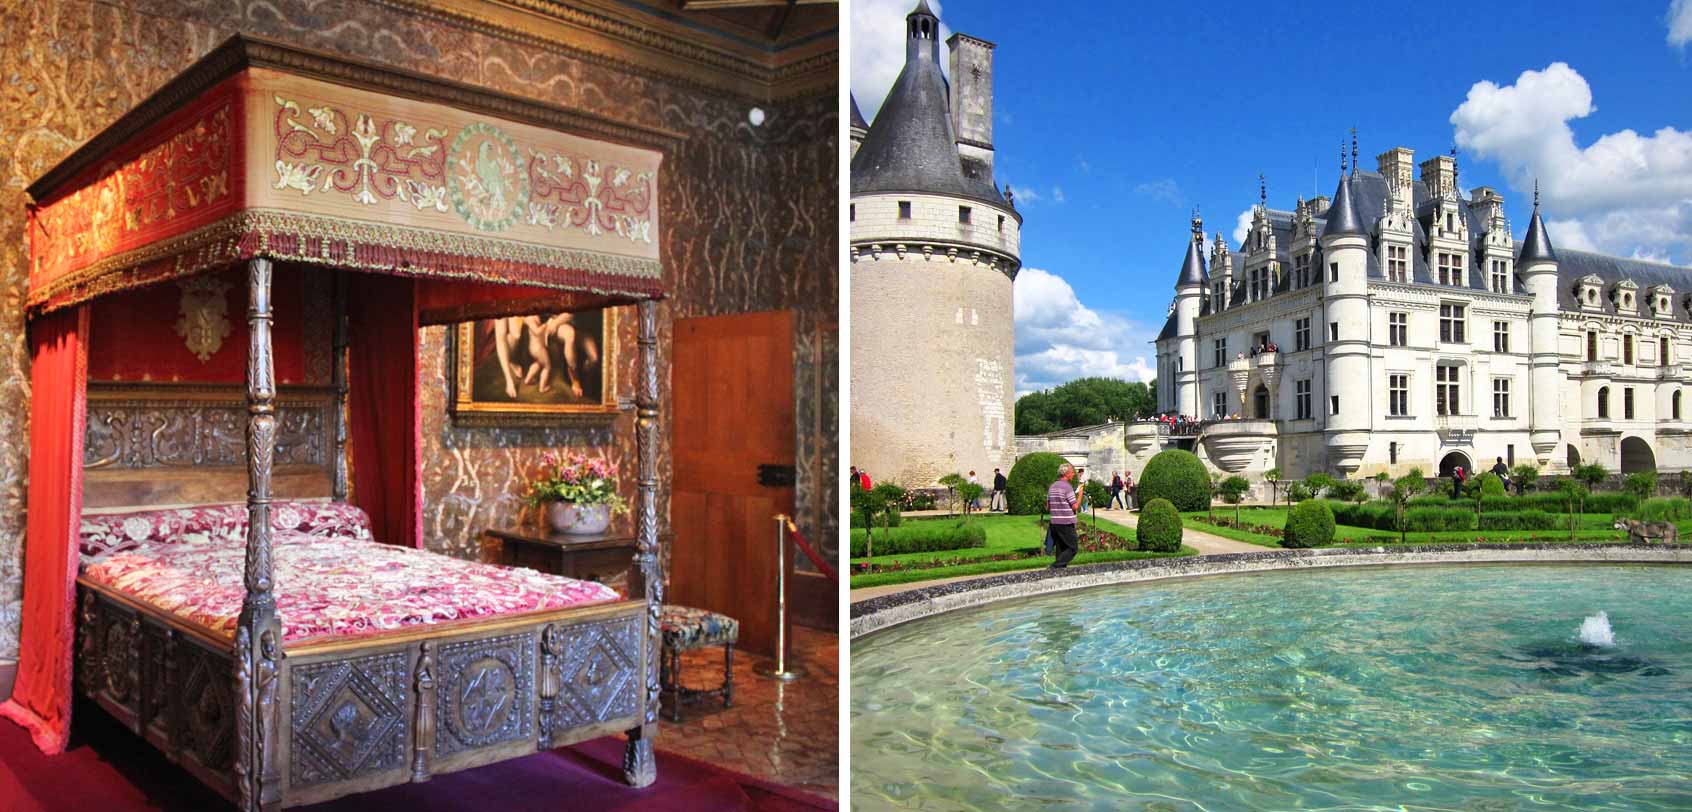 Chateau de Chenonceau: Castles in France